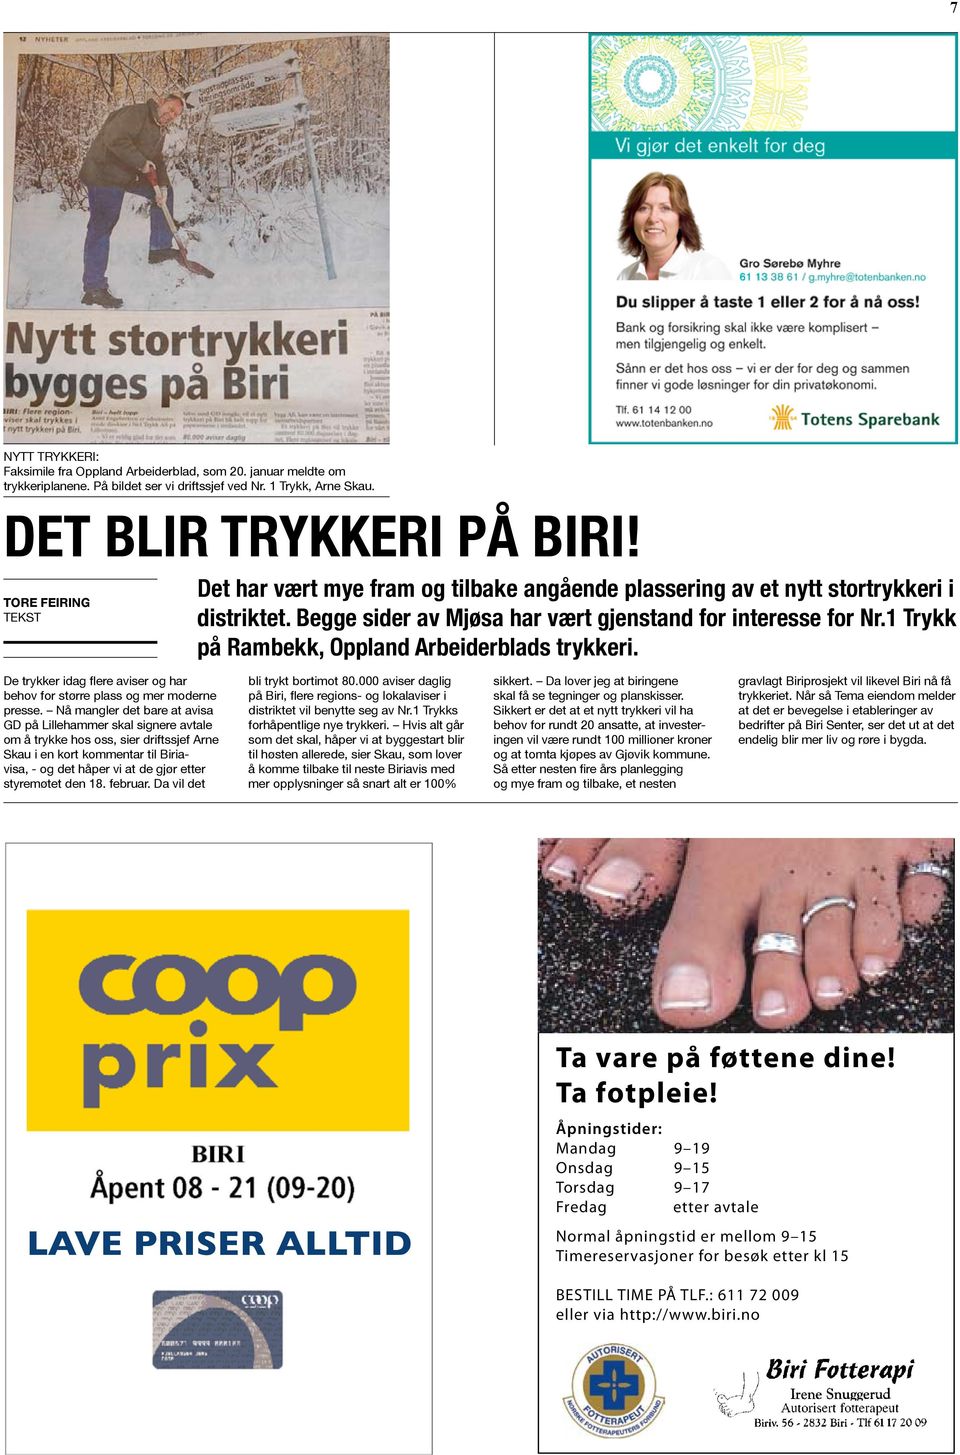 1 Trykk på Rambekk, Oppland Arbeiderblads trykkeri. De trykker idag flere aviser og har behov for større plass og mer moderne presse.